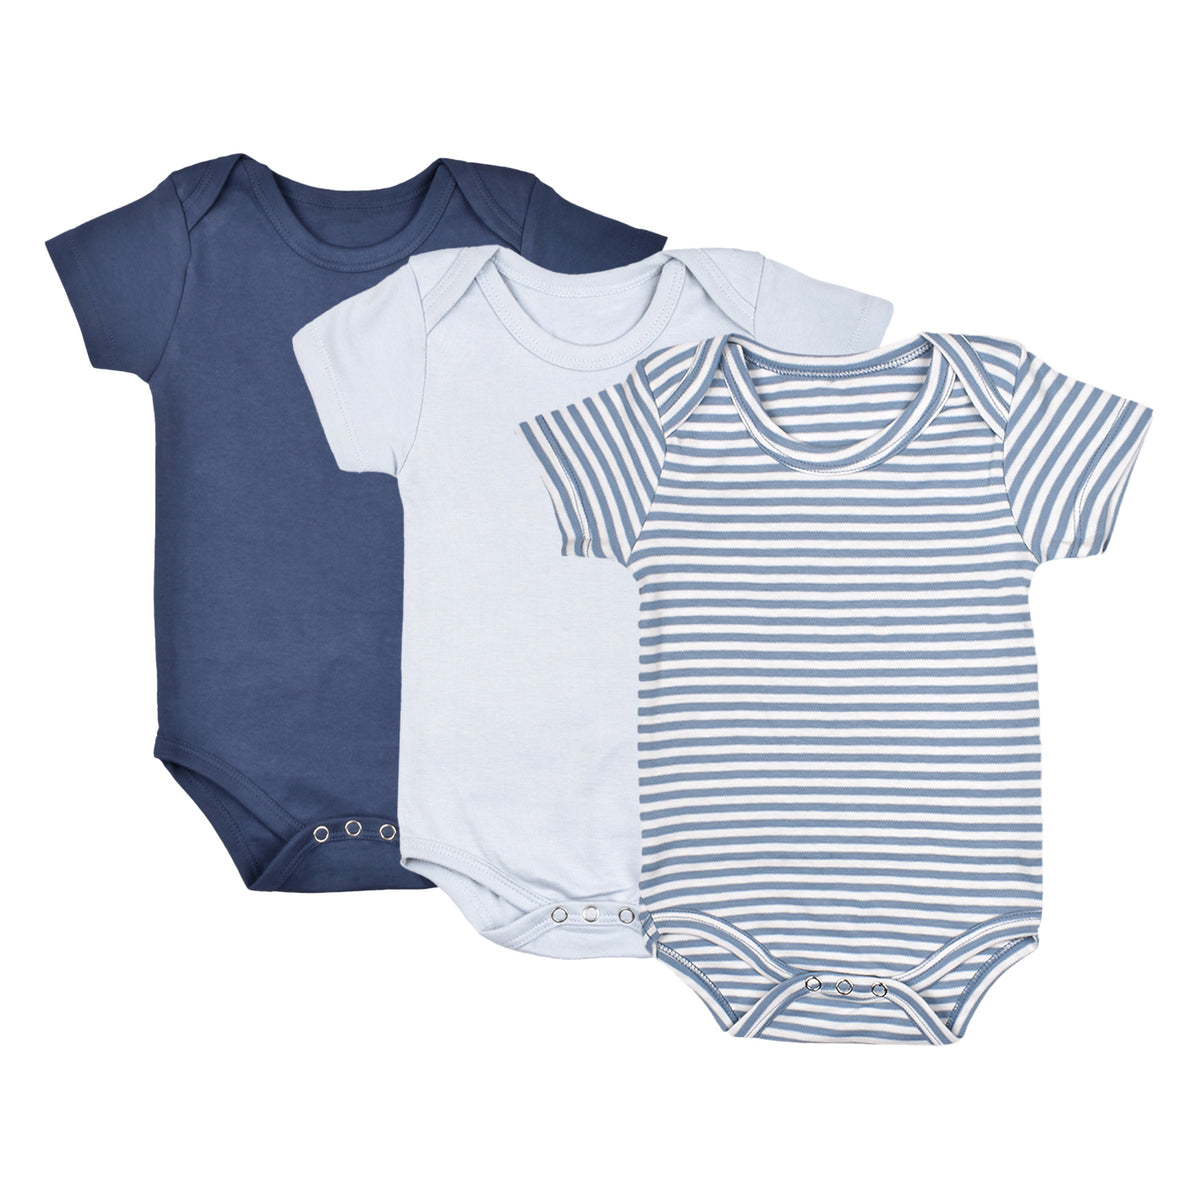 Baby Soft Organic cotton Unisex  Onesie/BodySuit - Navy, Sky Blue & Dark Blue Striped - Pack of 3